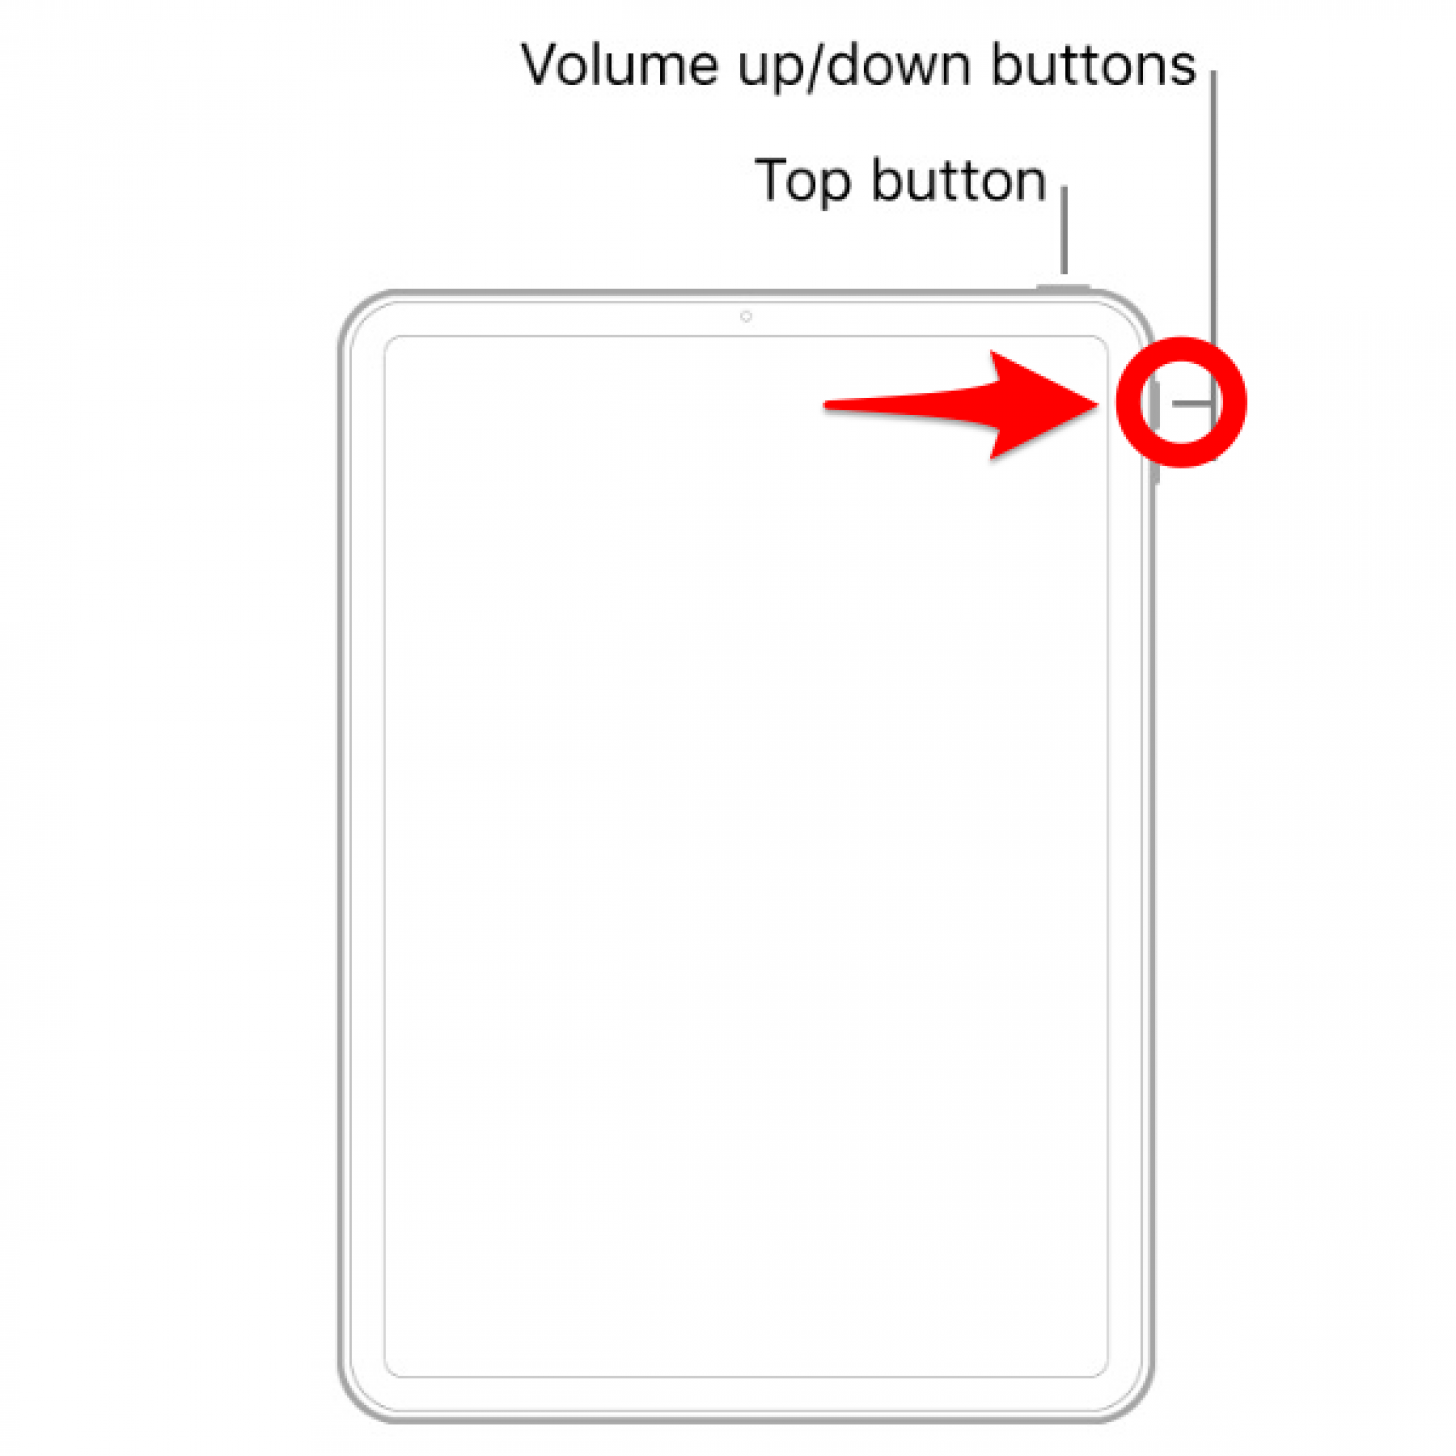 Presione el botón para subir el volumen: cómo reiniciar el iPad